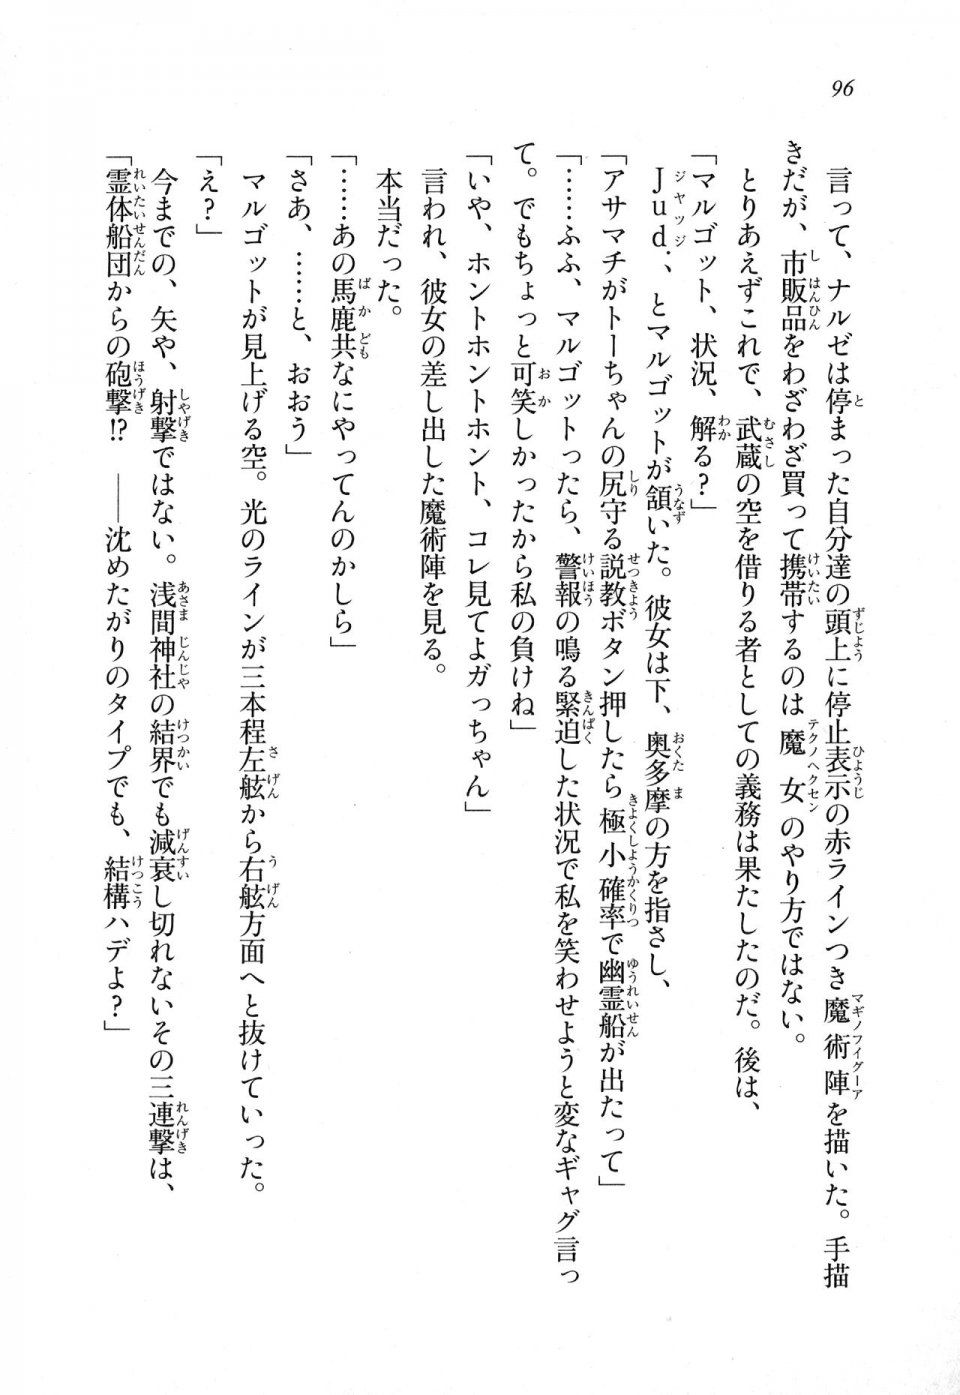 Kyoukai Senjou no Horizon LN Sidestory Vol 1 - Photo #94